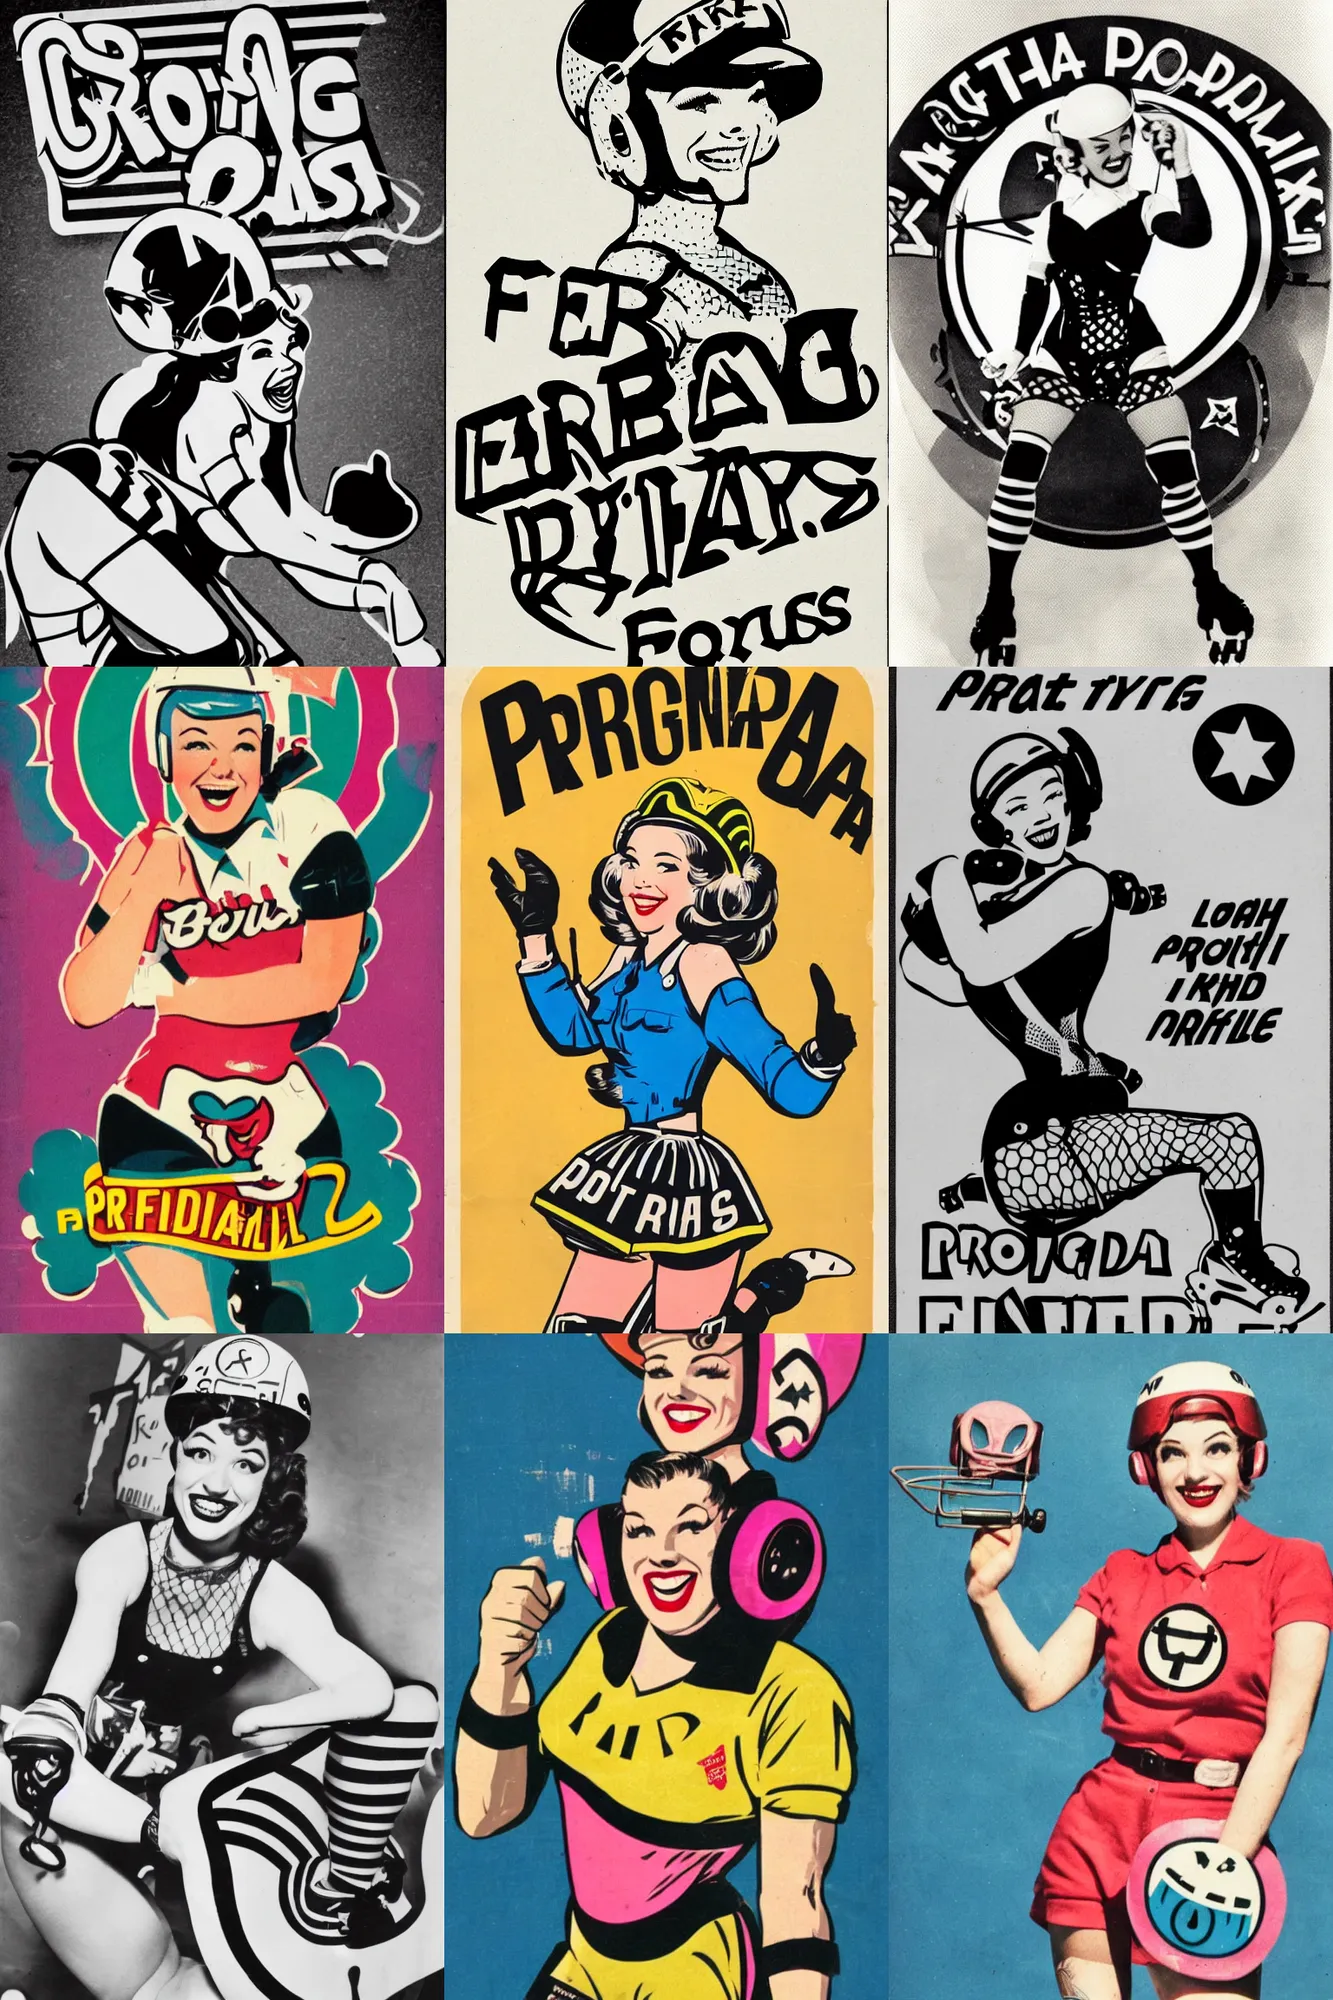 Prompt: propaganda logo, pretty roller derby girl, wearing roller derby helmet, wearing fishnets, smile 1950s